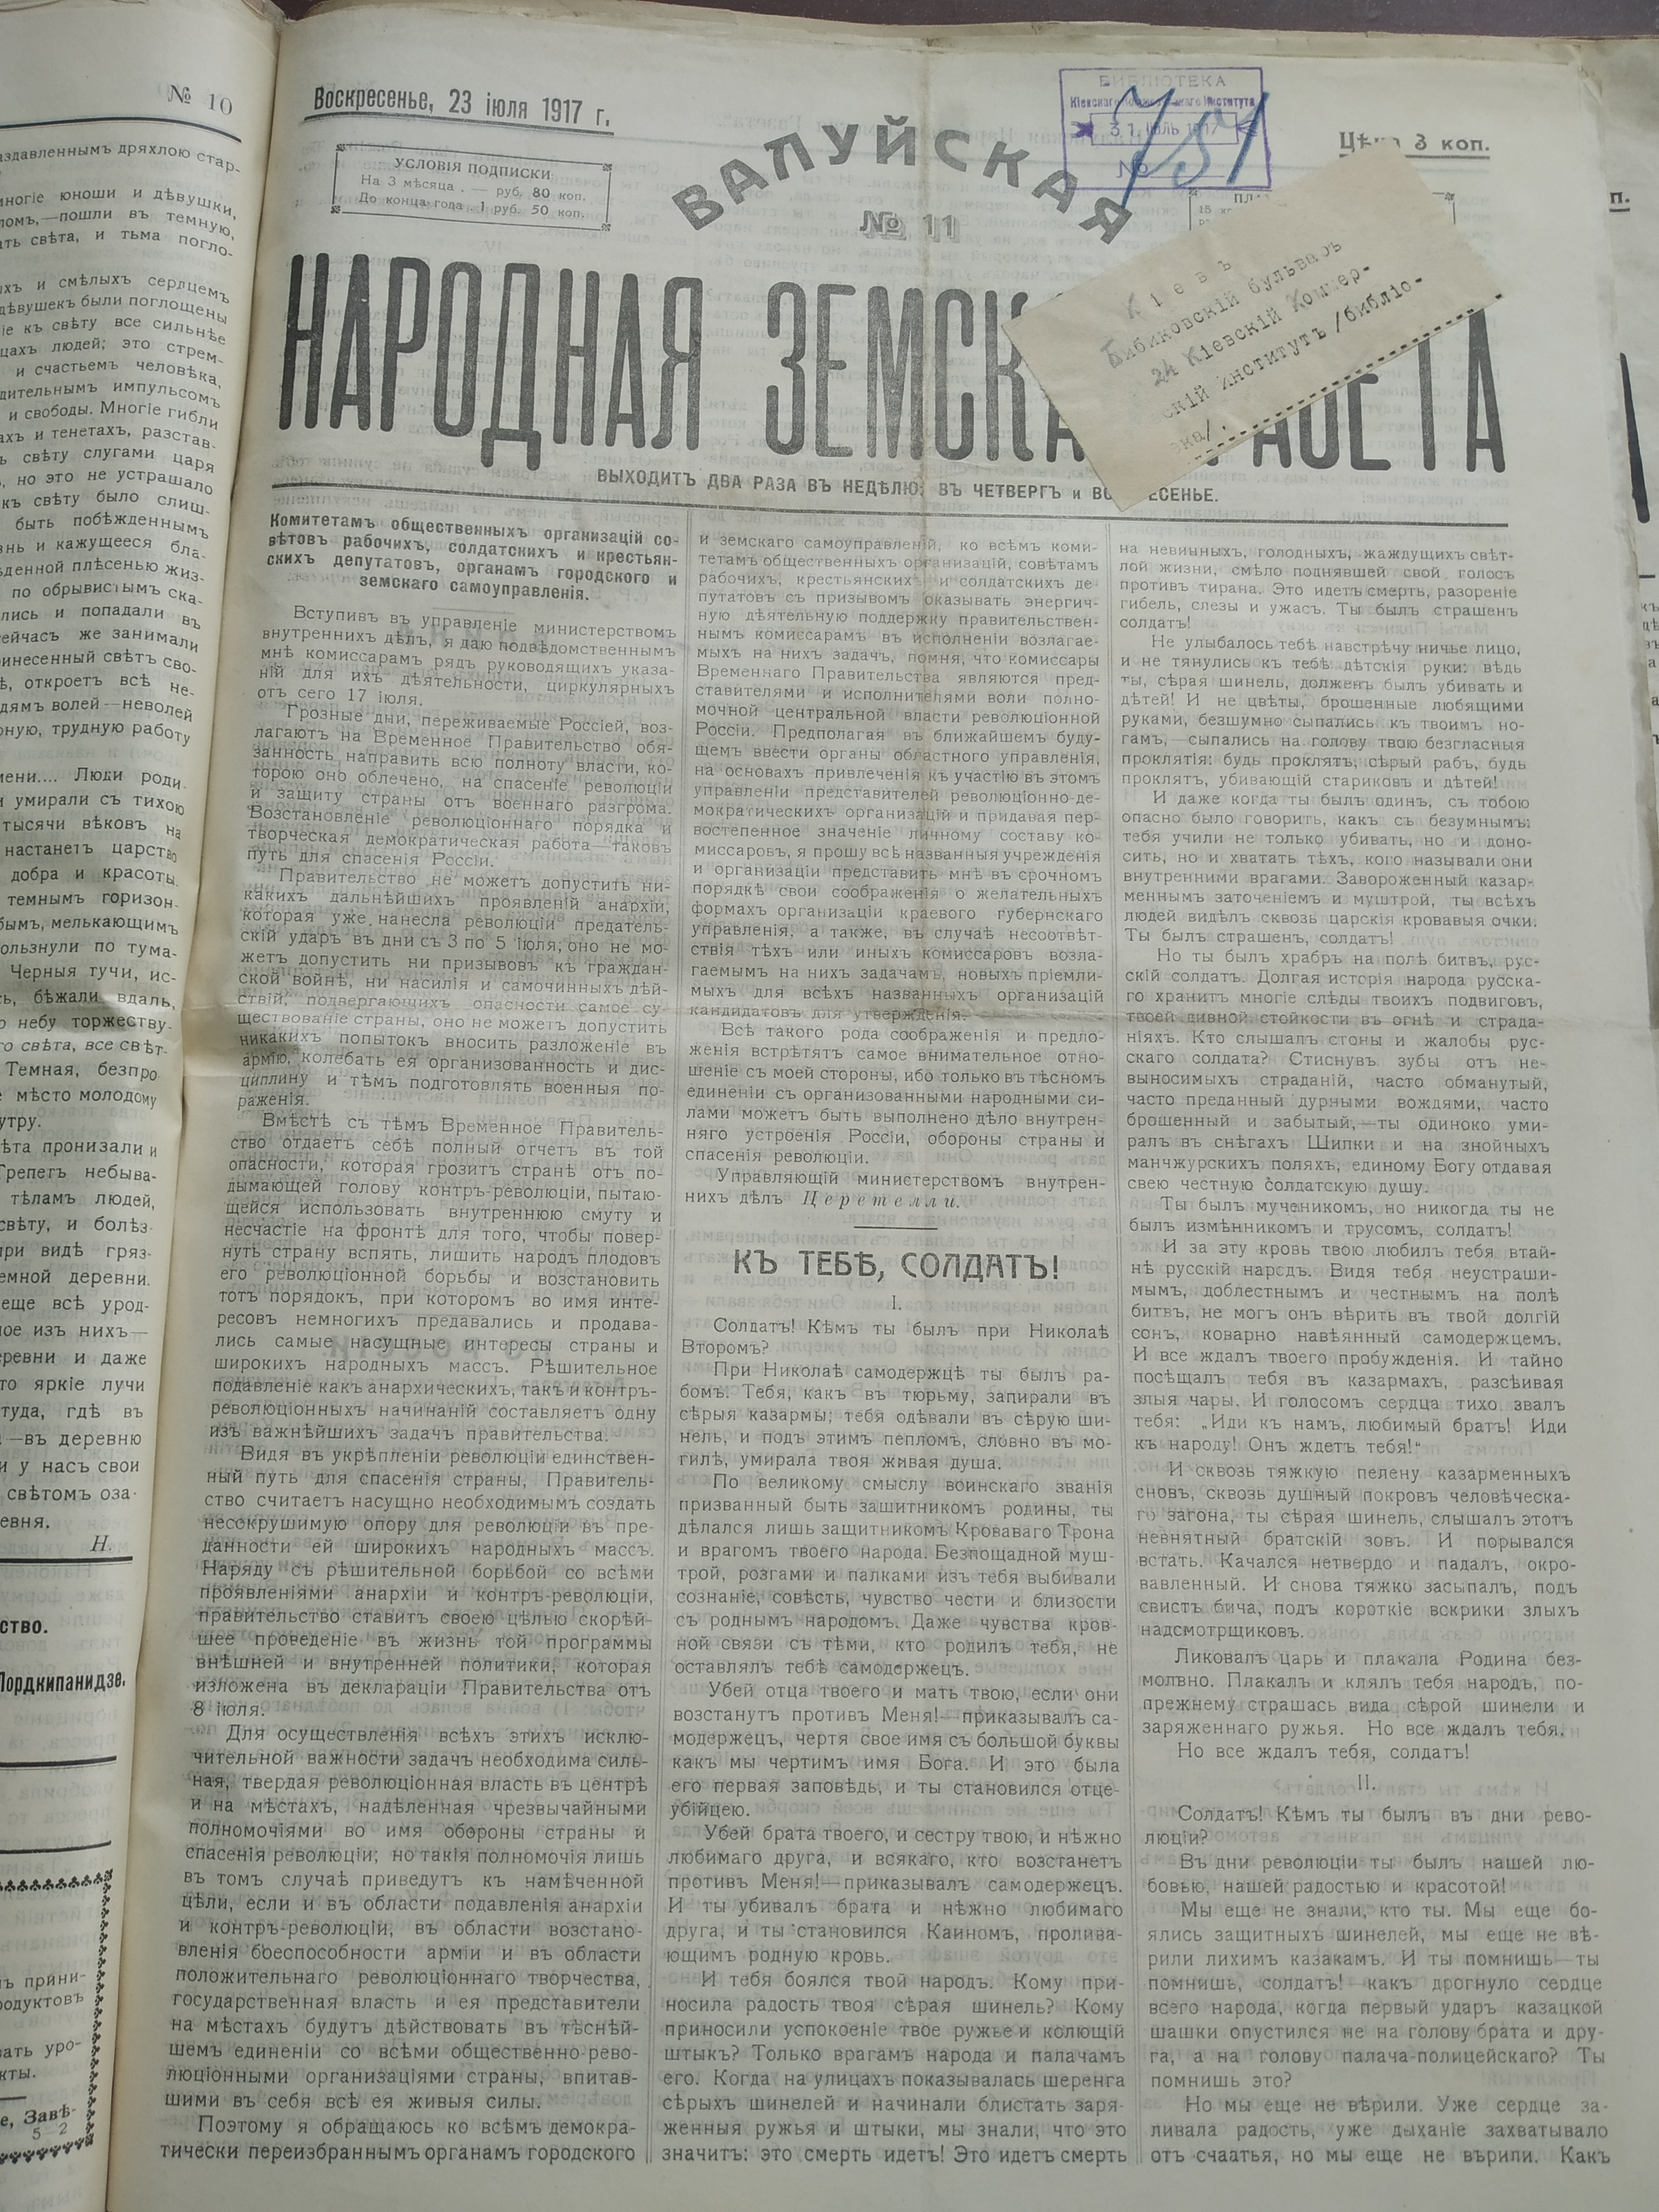 [Валуйская народная земская газета, 1917 год]